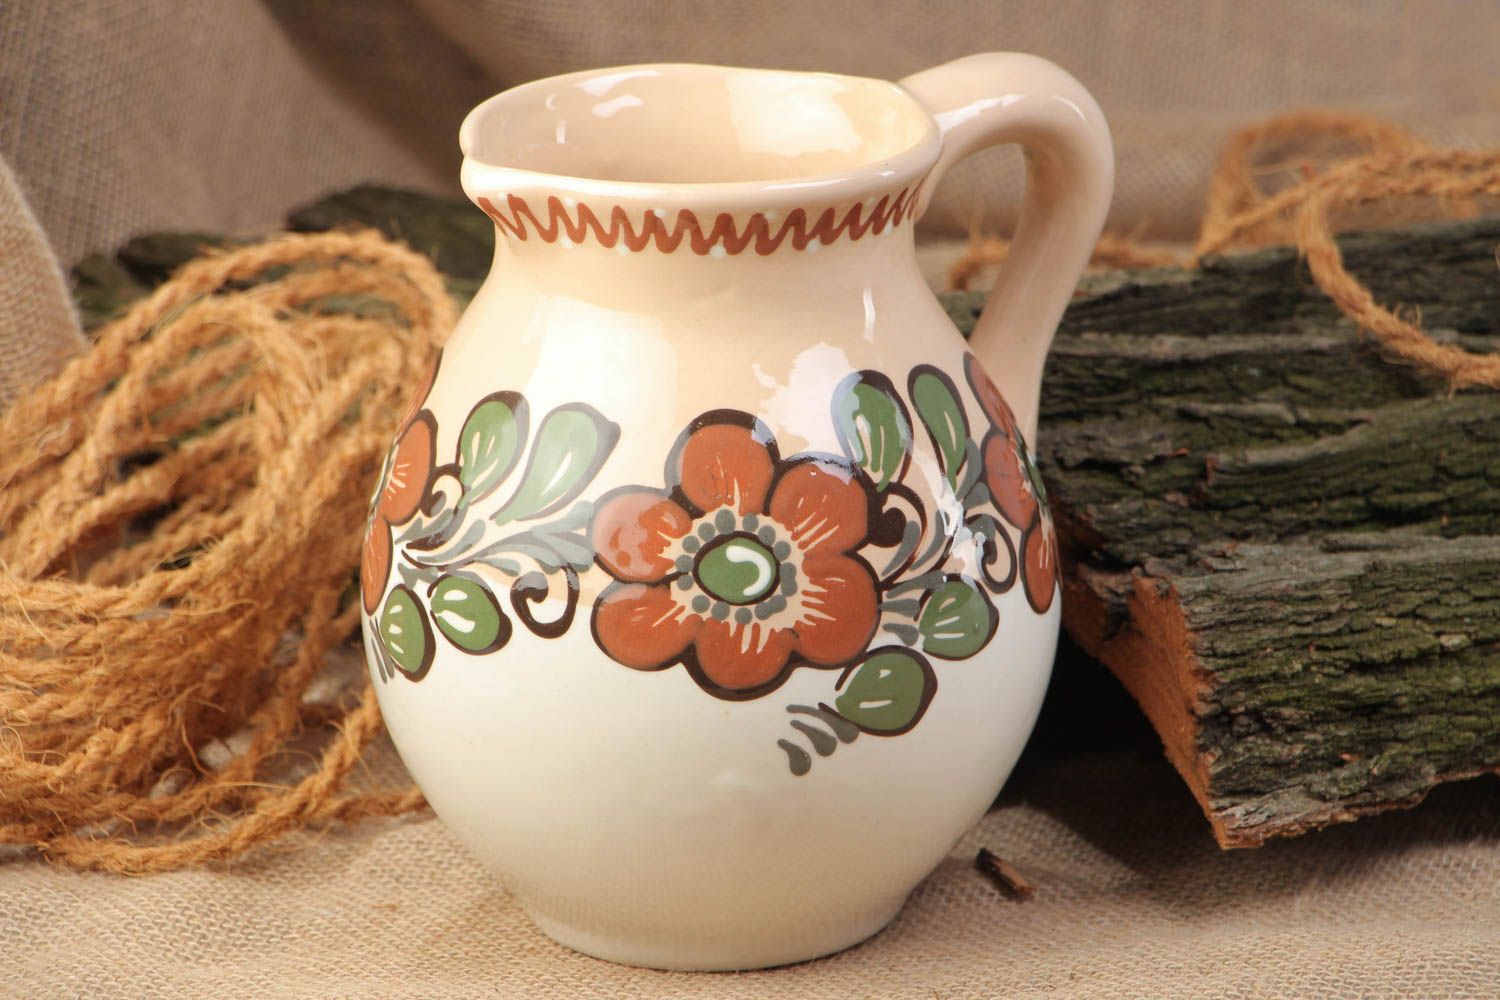 Cruche en argile faite main couverte de glaçure originale motif fleurs 2.5 l photo 1